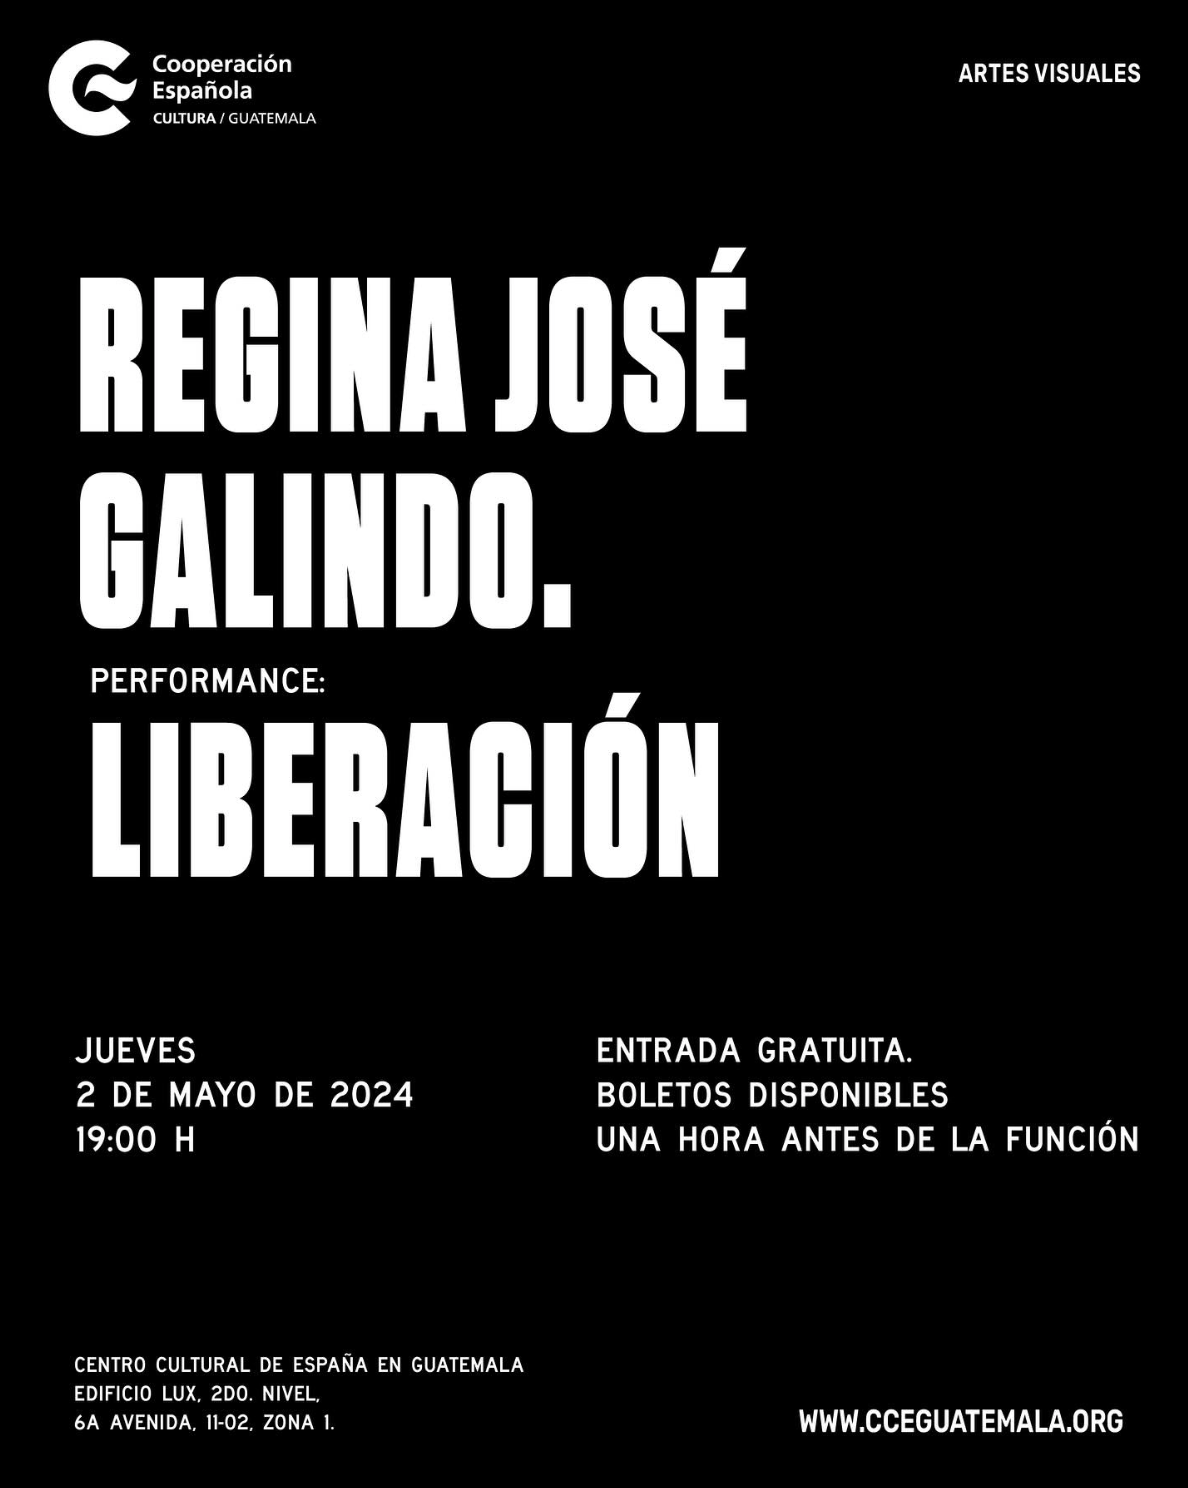 Liberación performance de Regina Galindo